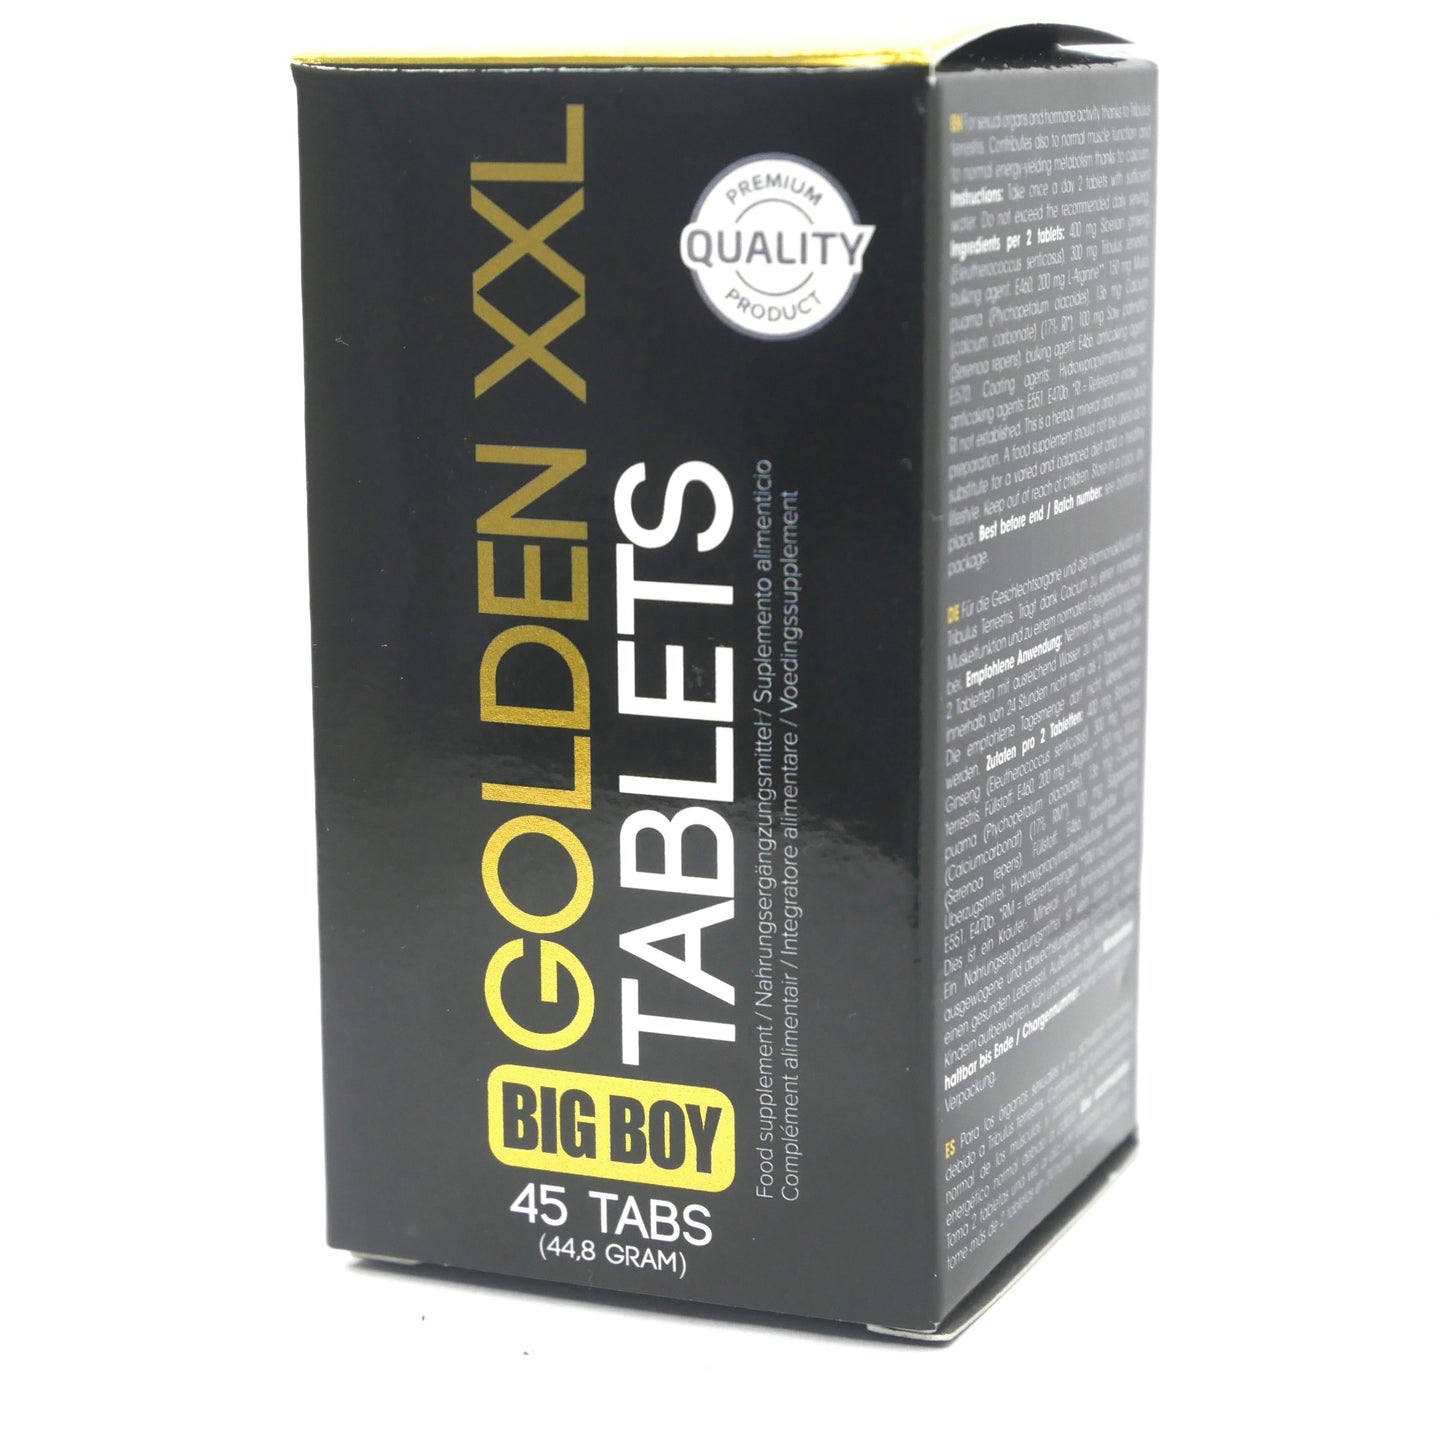 Big Boy Golden XXL Compresse Erect Erezione Ingrandimento della crescita del cazzo Maschio 45 Caps 